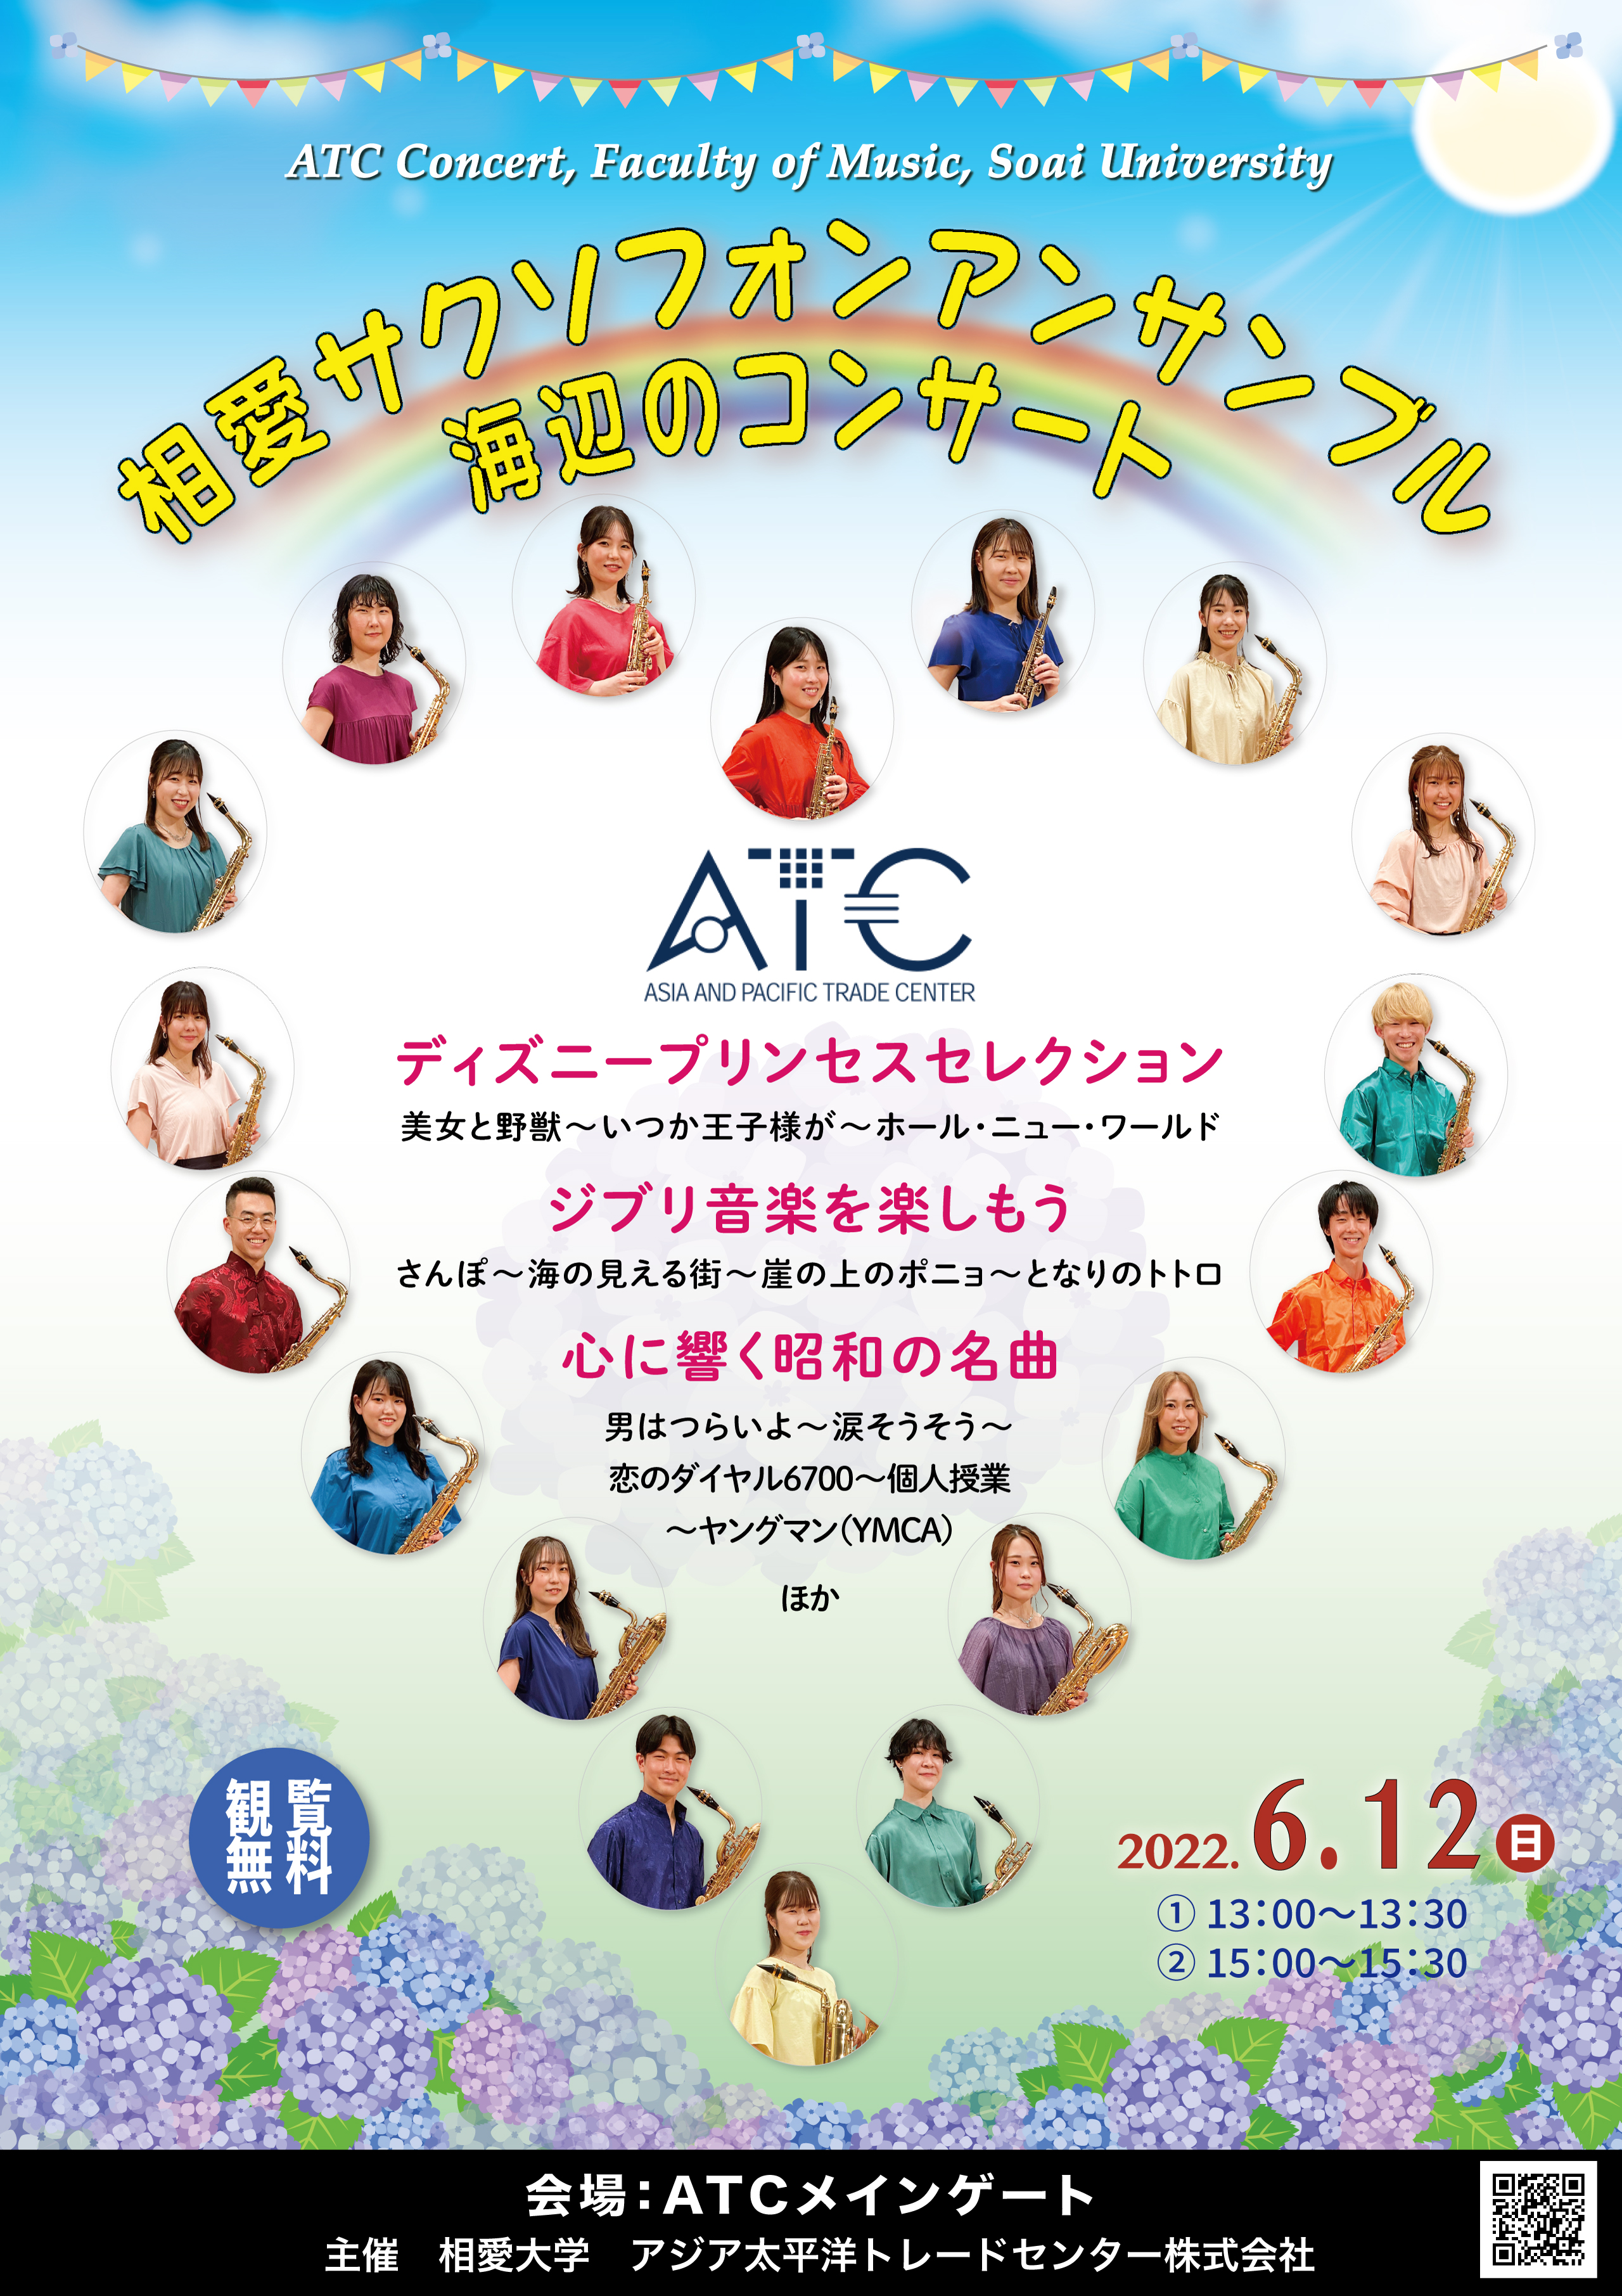 https://www.soai.ac.jp/information/event/220612_flyer_SoaiSax_ATC_pr_A4.jpeg